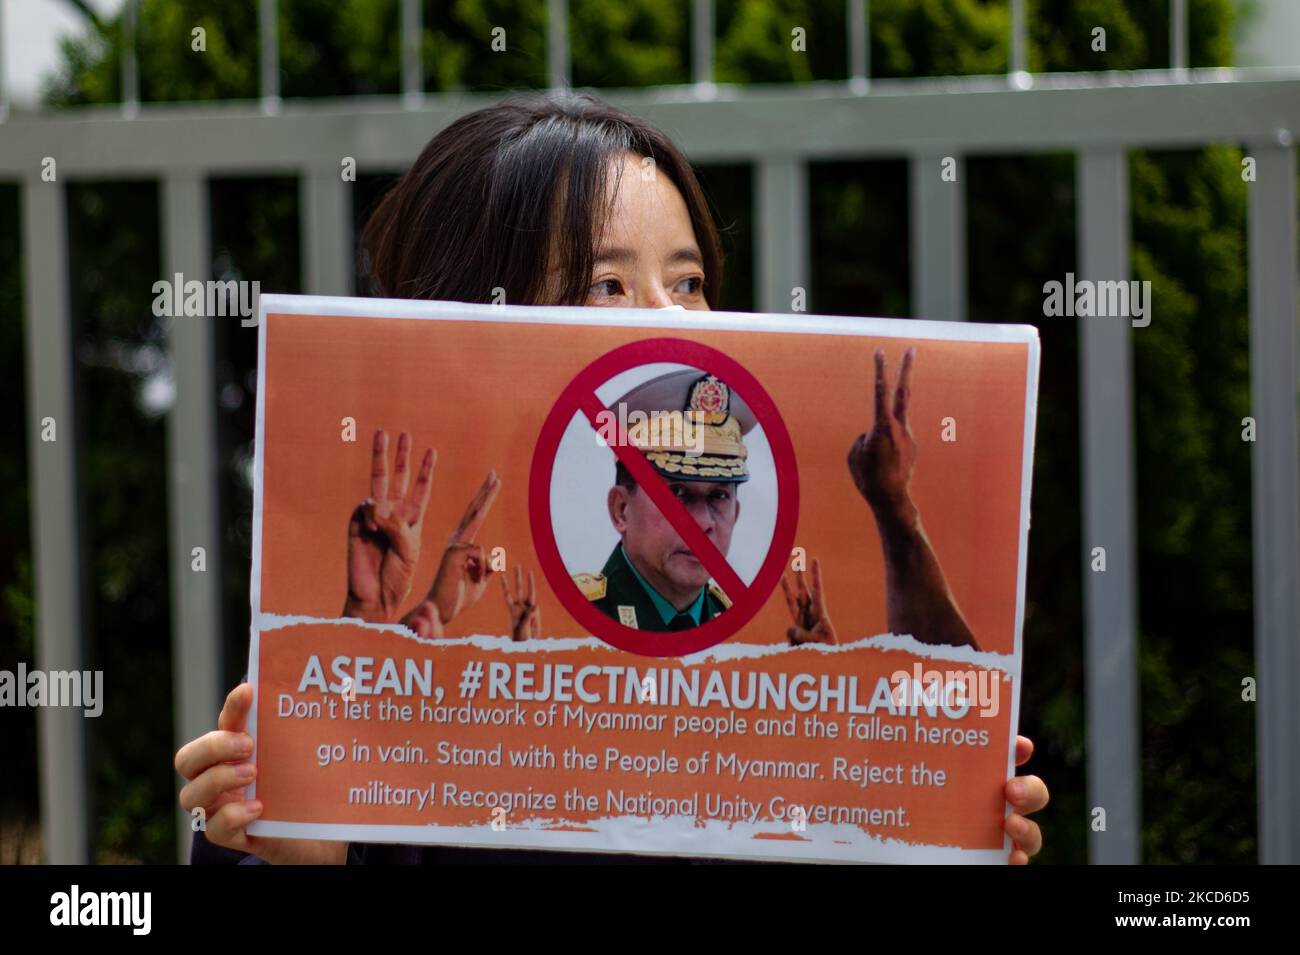 Un attivista del Sud Koean tiene un banner durante una conferenza stampa al di fuori dell'Ambasciata Indonesiana in Corea il 22 aprile 2021 a Seoul, Corea del Sud. I membri della Korean Civil Society Association, che sostiene la democrazia nel Myanmar, tengono una conferenza stampa di emergenza di fronte all'Ambasciata indonesiana in Corea e condannano la partecipazione al vertice dell'ASEAN (Associazione delle Nazioni del Sud-Est asiatico) del comandante principale del regime militare del Myanmar, min Aung Hlaing. (Foto di Chris Jung/NurPhoto) Foto Stock